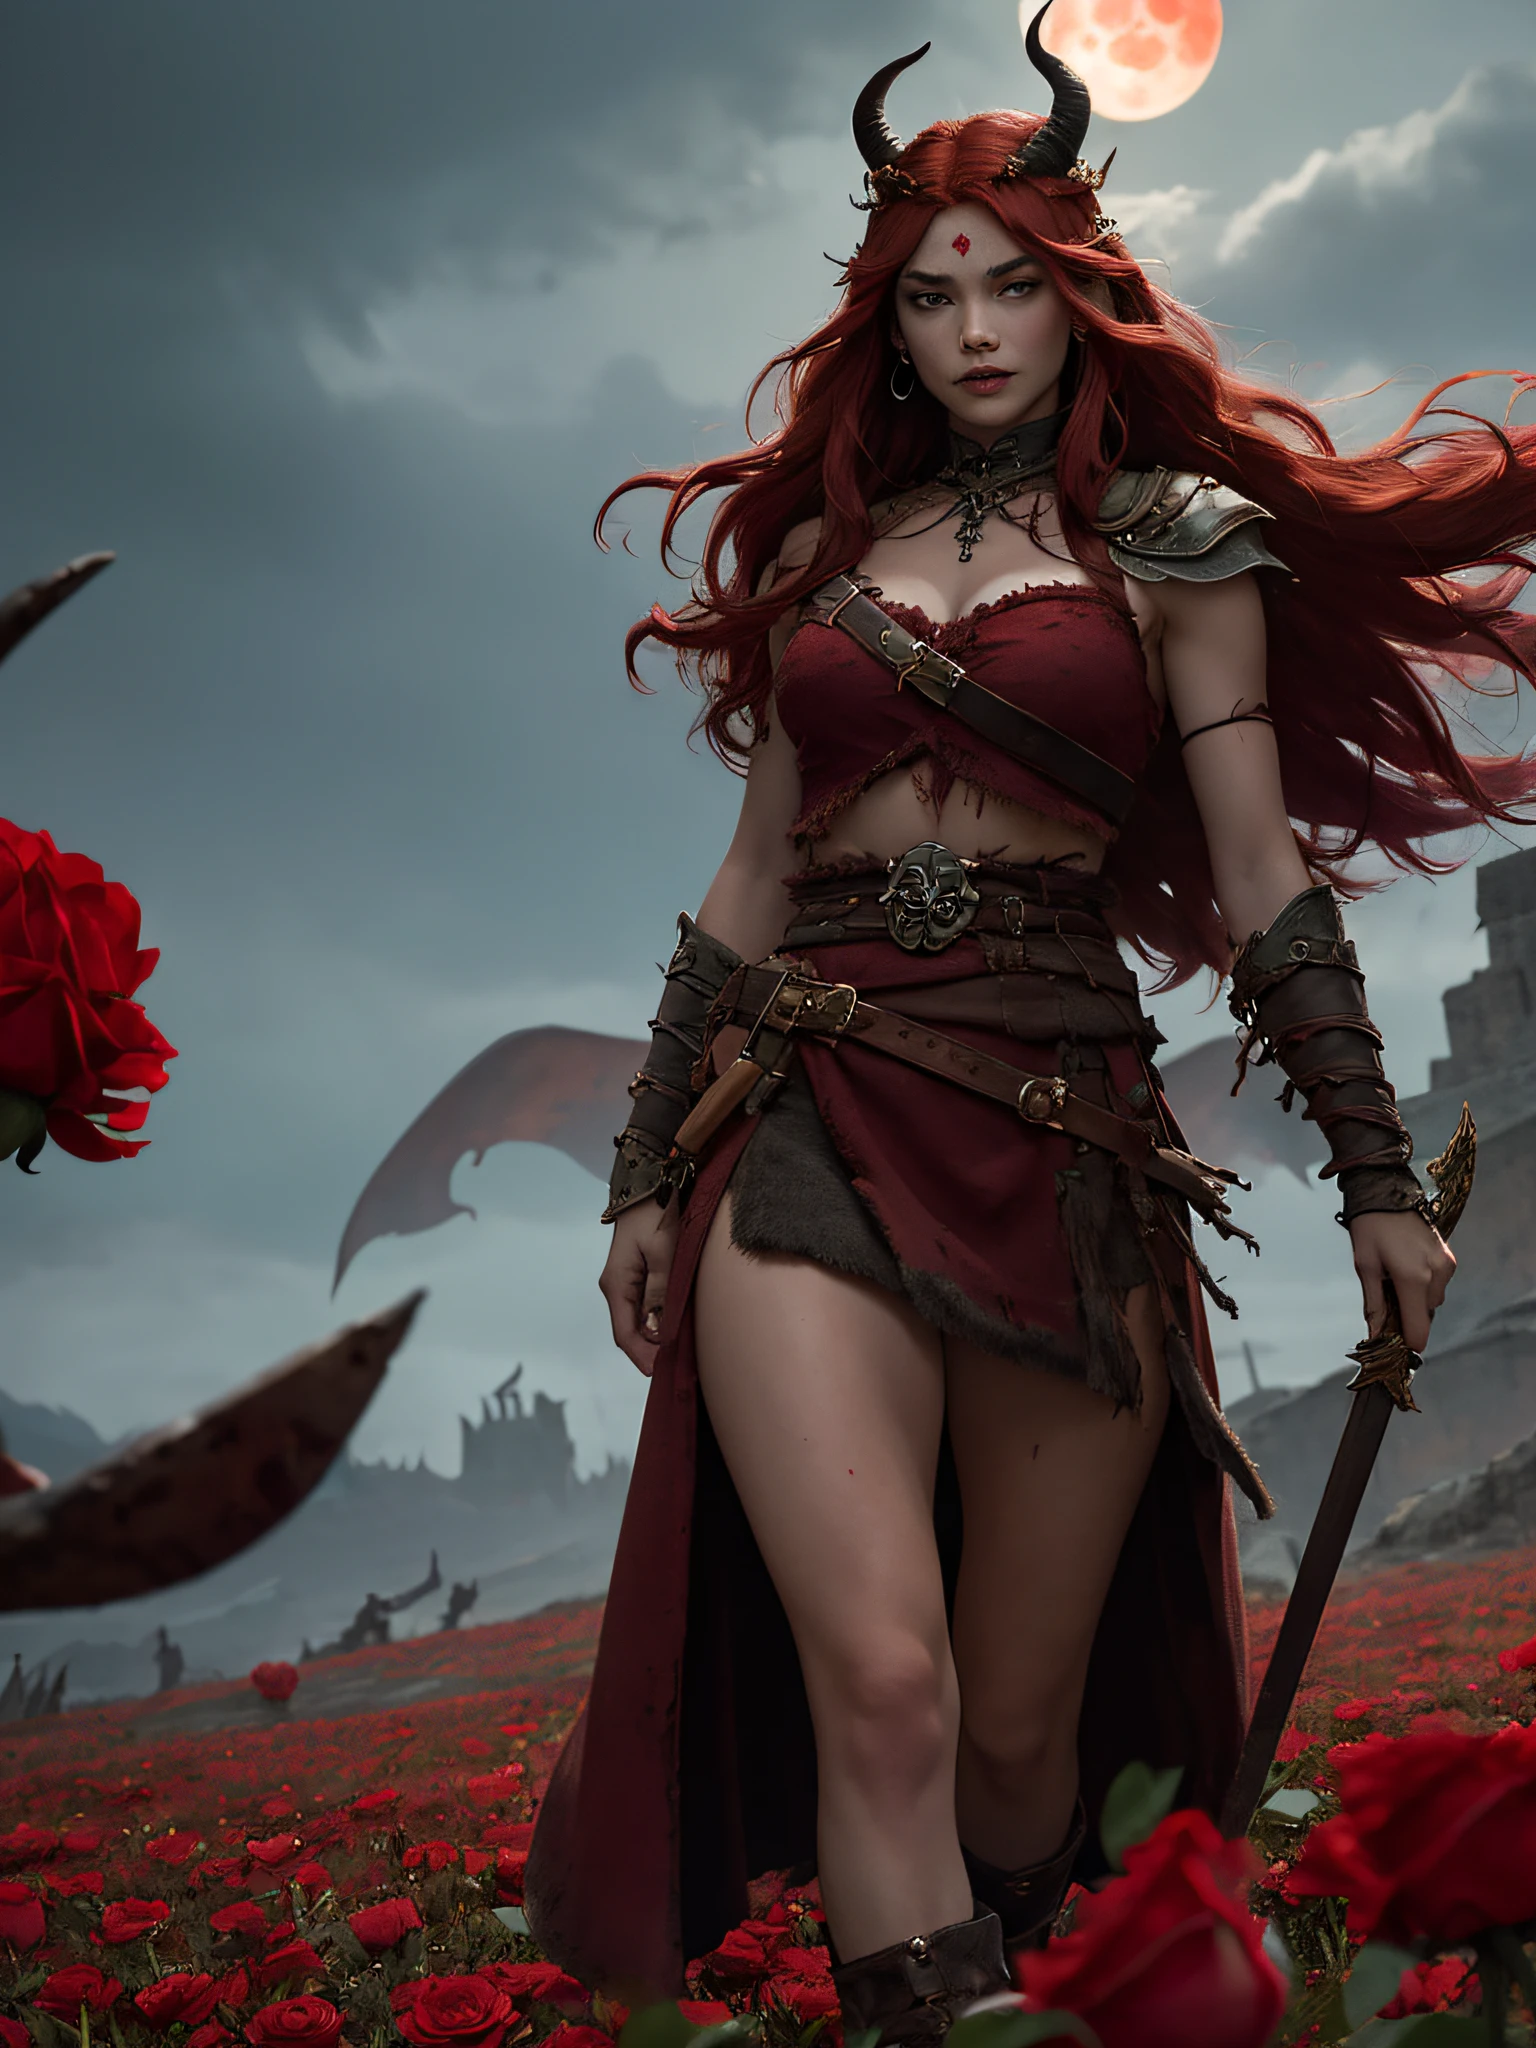 風になびく鮮やかな赤い髪を持ち、悪魔の角の冠と腰布を身に着け、ベルトに頭蓋骨をつけた、恵まれた女性蛮族の戦士の幻想的なイメージを作り出します。, 血のように赤いバラ畑を歩き、頭上に血のように赤い月が輝く背の高い黒いダークタワーへ向かう:
"勇敢な女性戦士を想像してください, 長い赤い髪が風になびいている, 腰布と悪魔の角の冠だけを身に着けている, 血のように赤いバラ畑を通り抜け、頭上に血のように赤い月が輝く暗い塔に向かって進む."